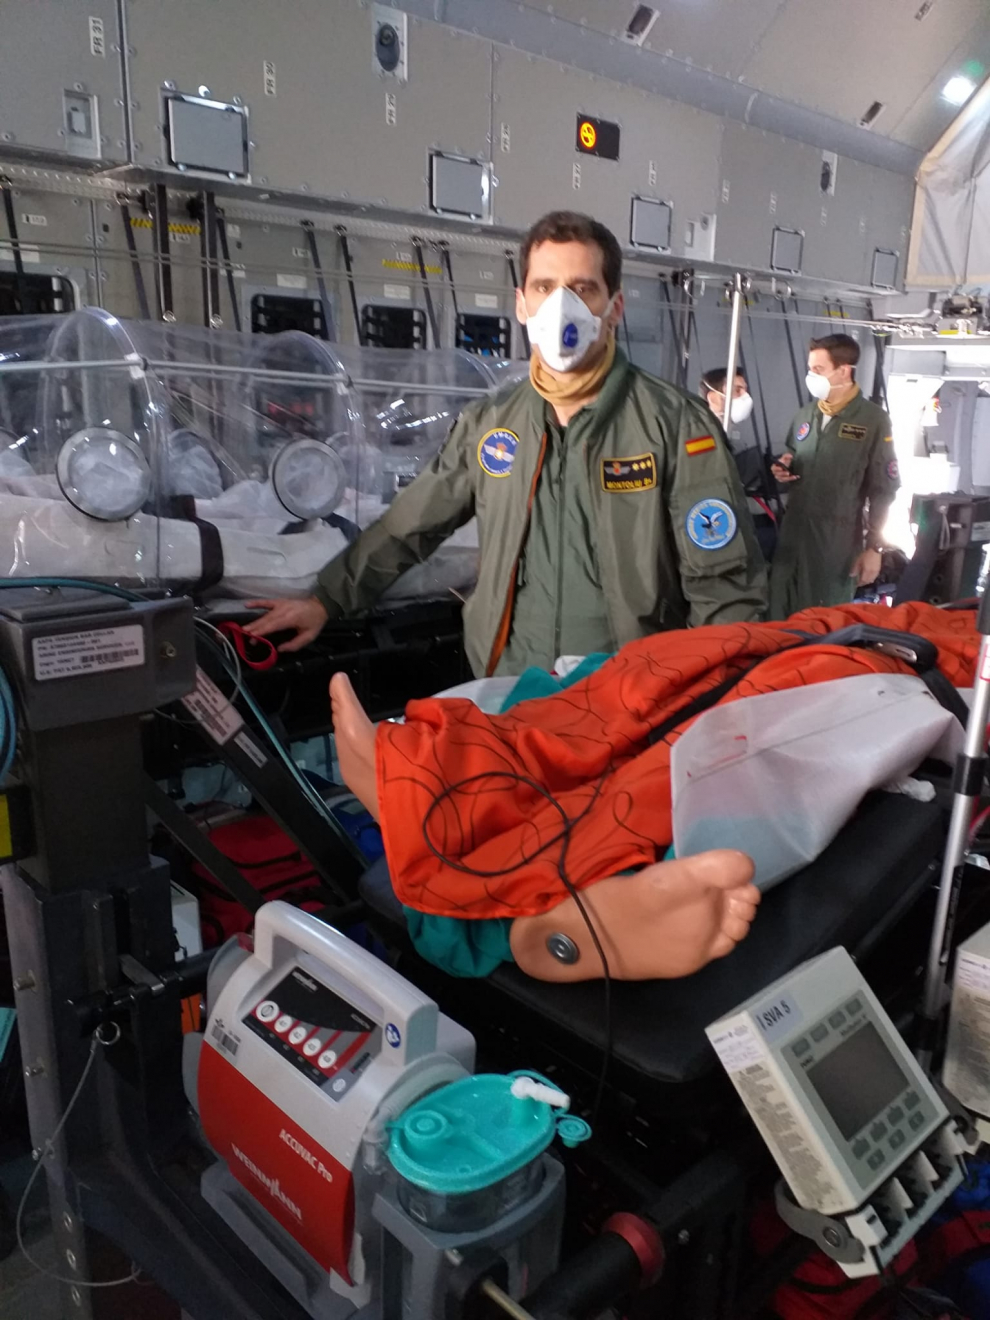 Militares de la UMAER instalan quirófanos para cinco enfermos críticos y 14 menos graves para la prueba de capacitar el avión de la Base de Zaragoza.